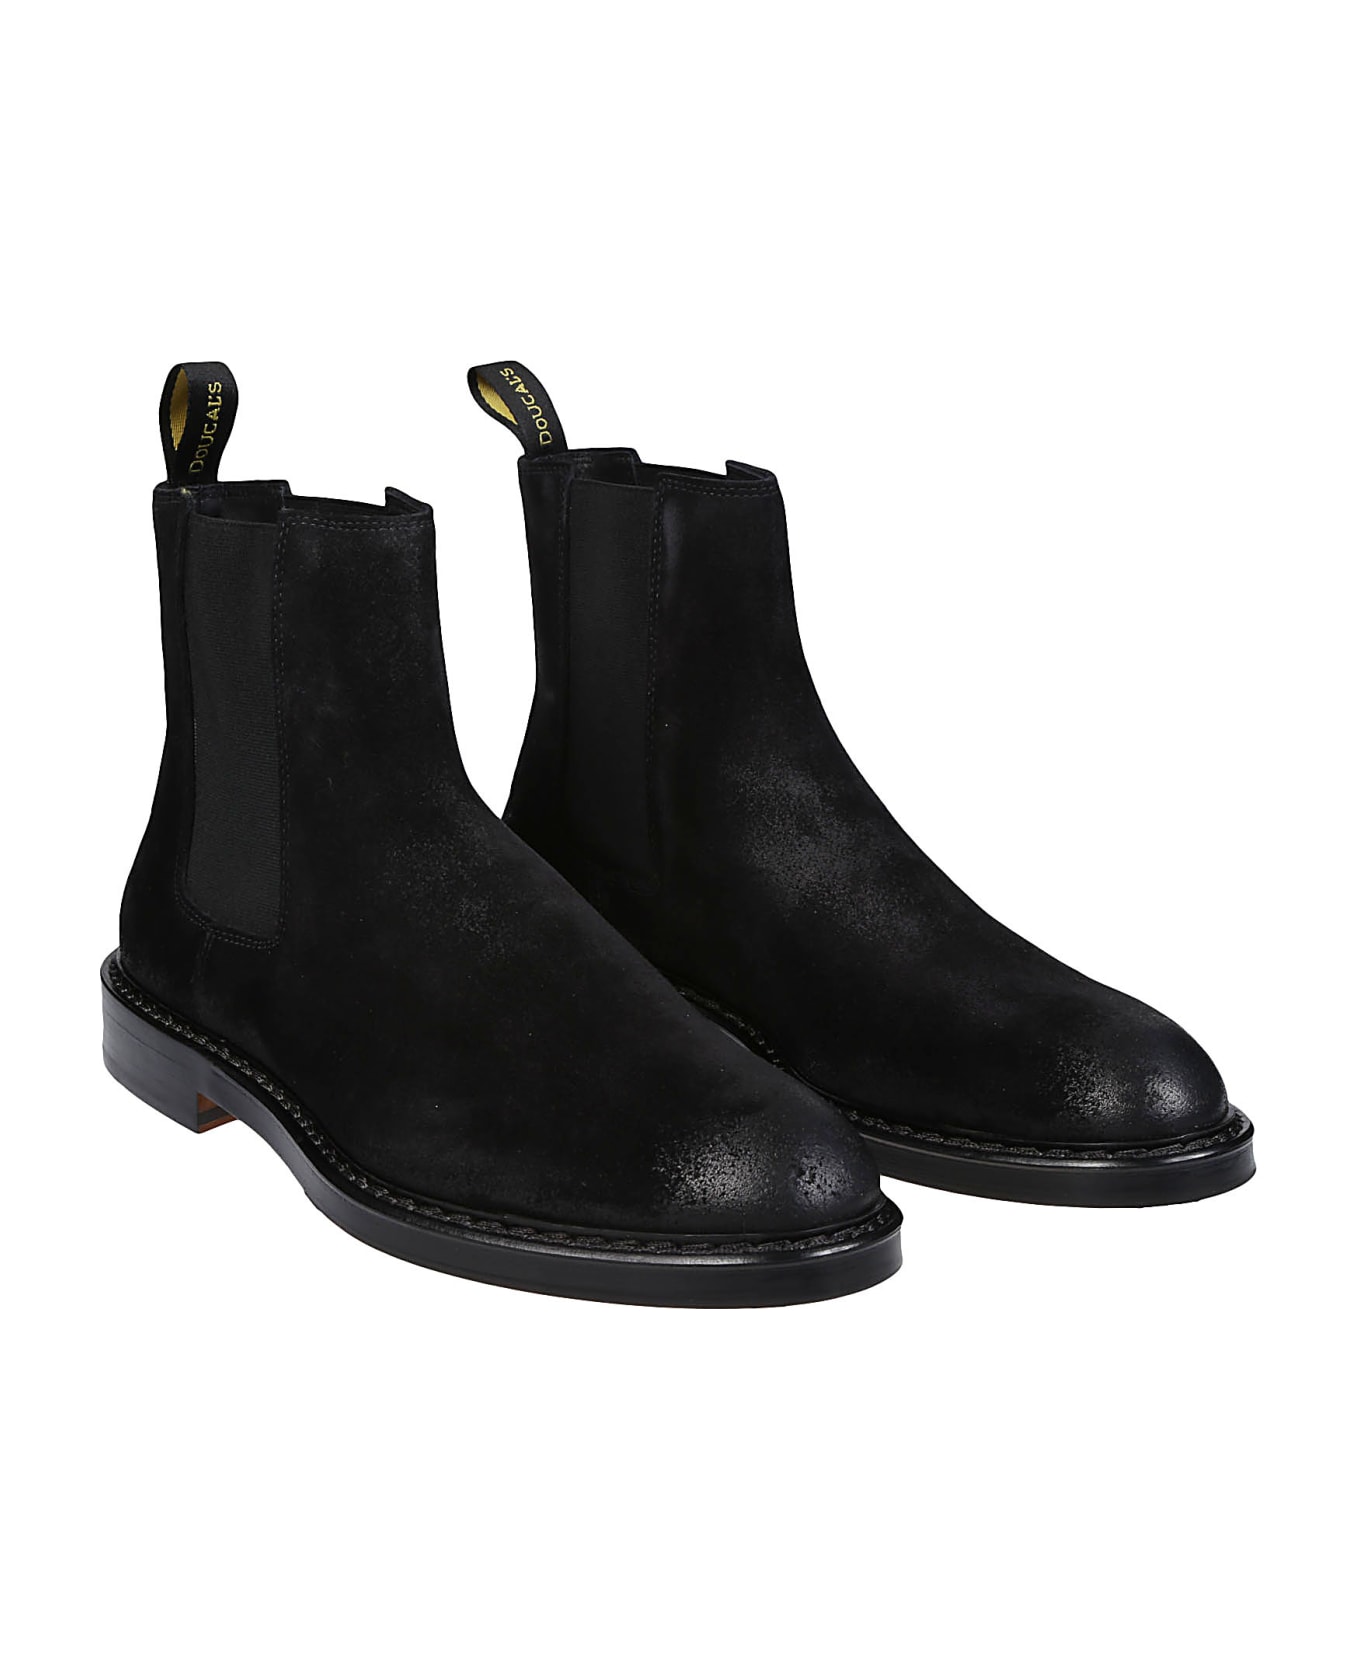 Doucal's Beatles Ankle Boots - Nero/fondo Nero